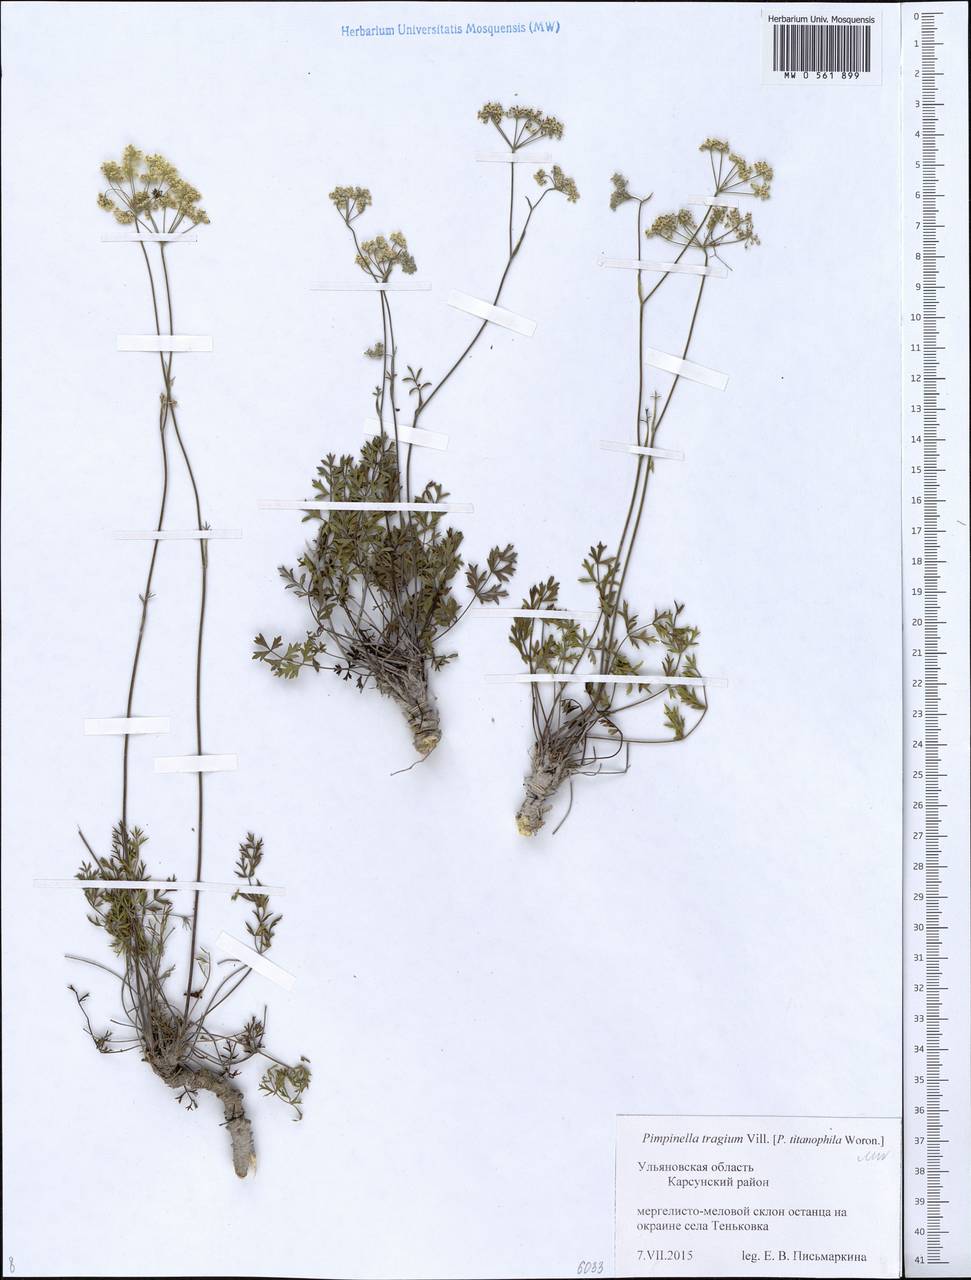 Pimpinella tragium Vill., Eastern Europe, Middle Volga region (E8) (Russia)